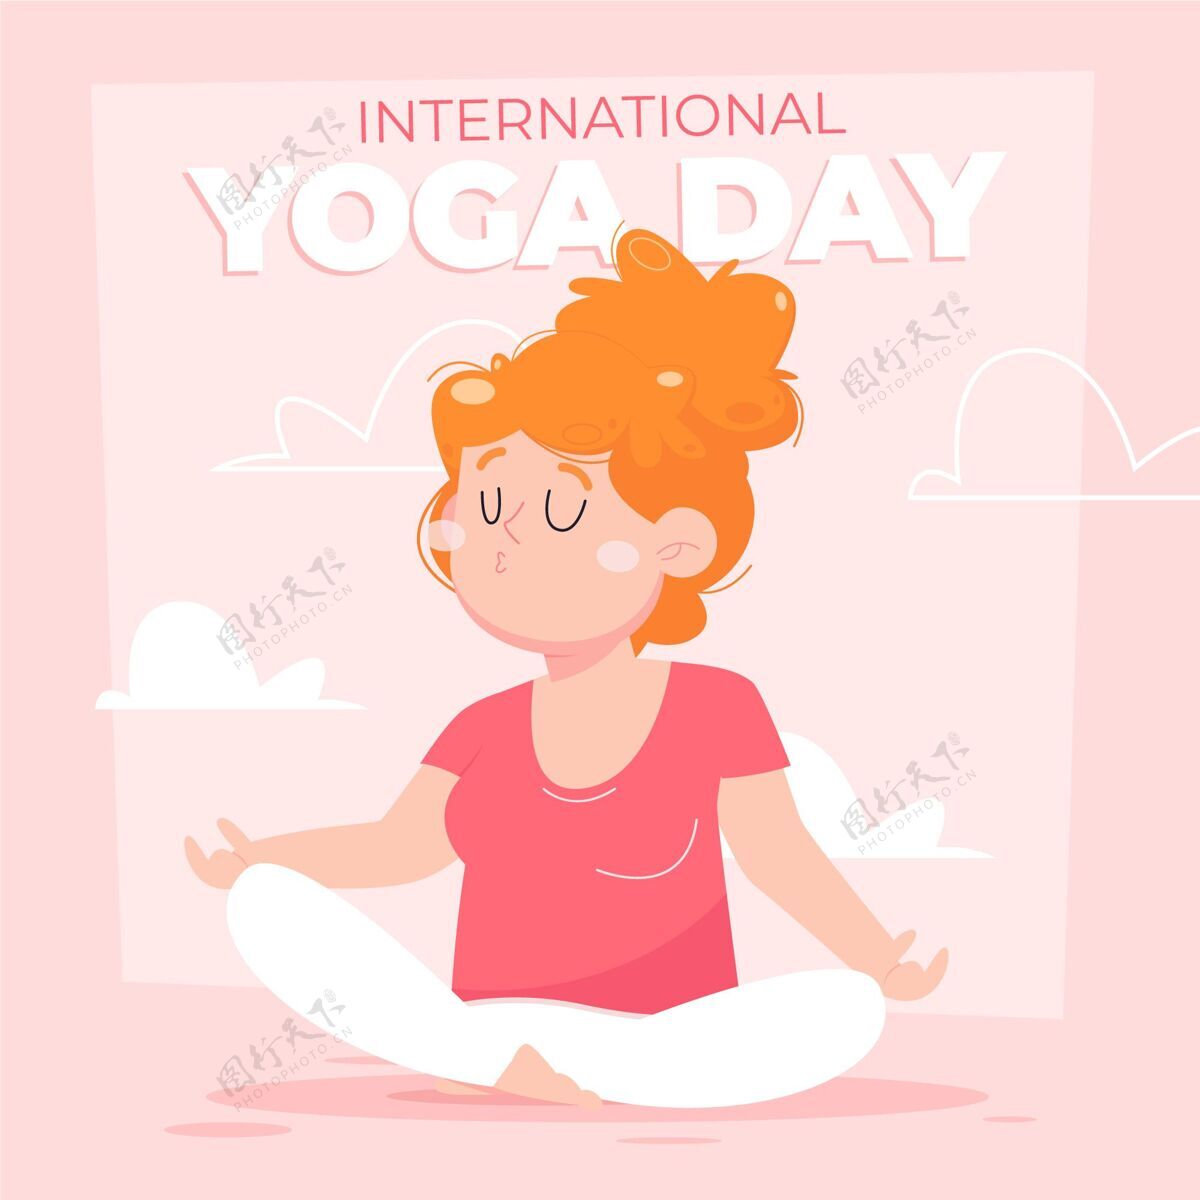 6月21日卡通国际瑜伽日插画反思精神实践运动